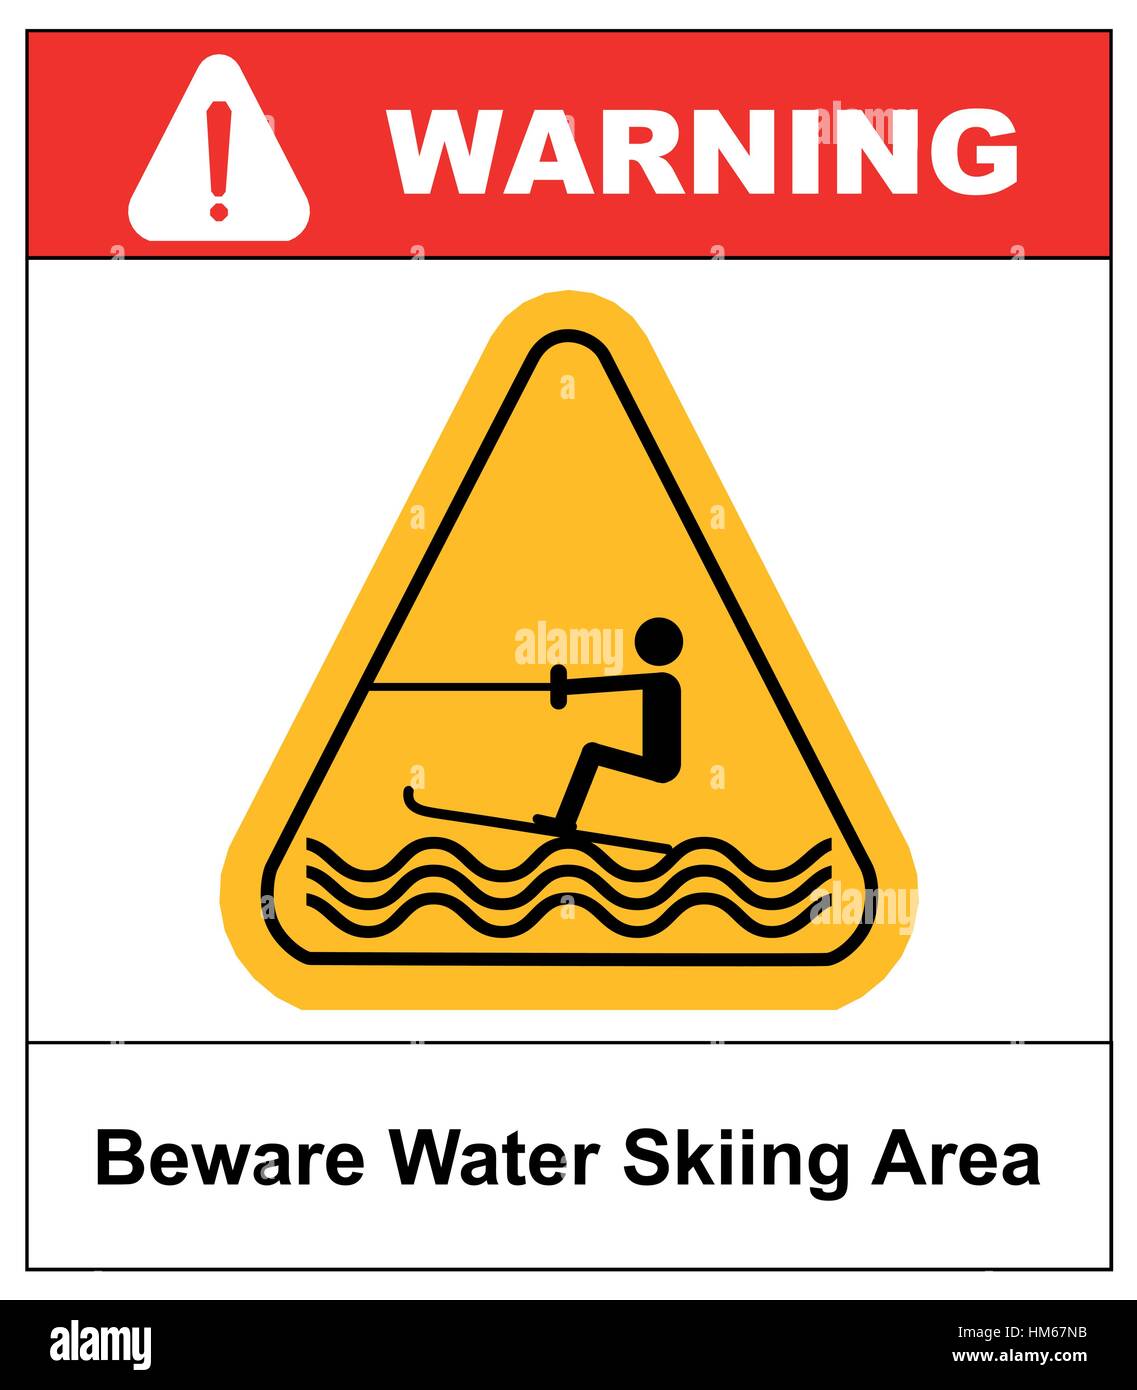 Méfiez-vous du ski nautique. Panneau d'avertissement dans triangle jaune isolé sur blanc. Stock Vector illustration. L'eau d'été Pictogrammes Sport Télévision People Icon Illustration de Vecteur